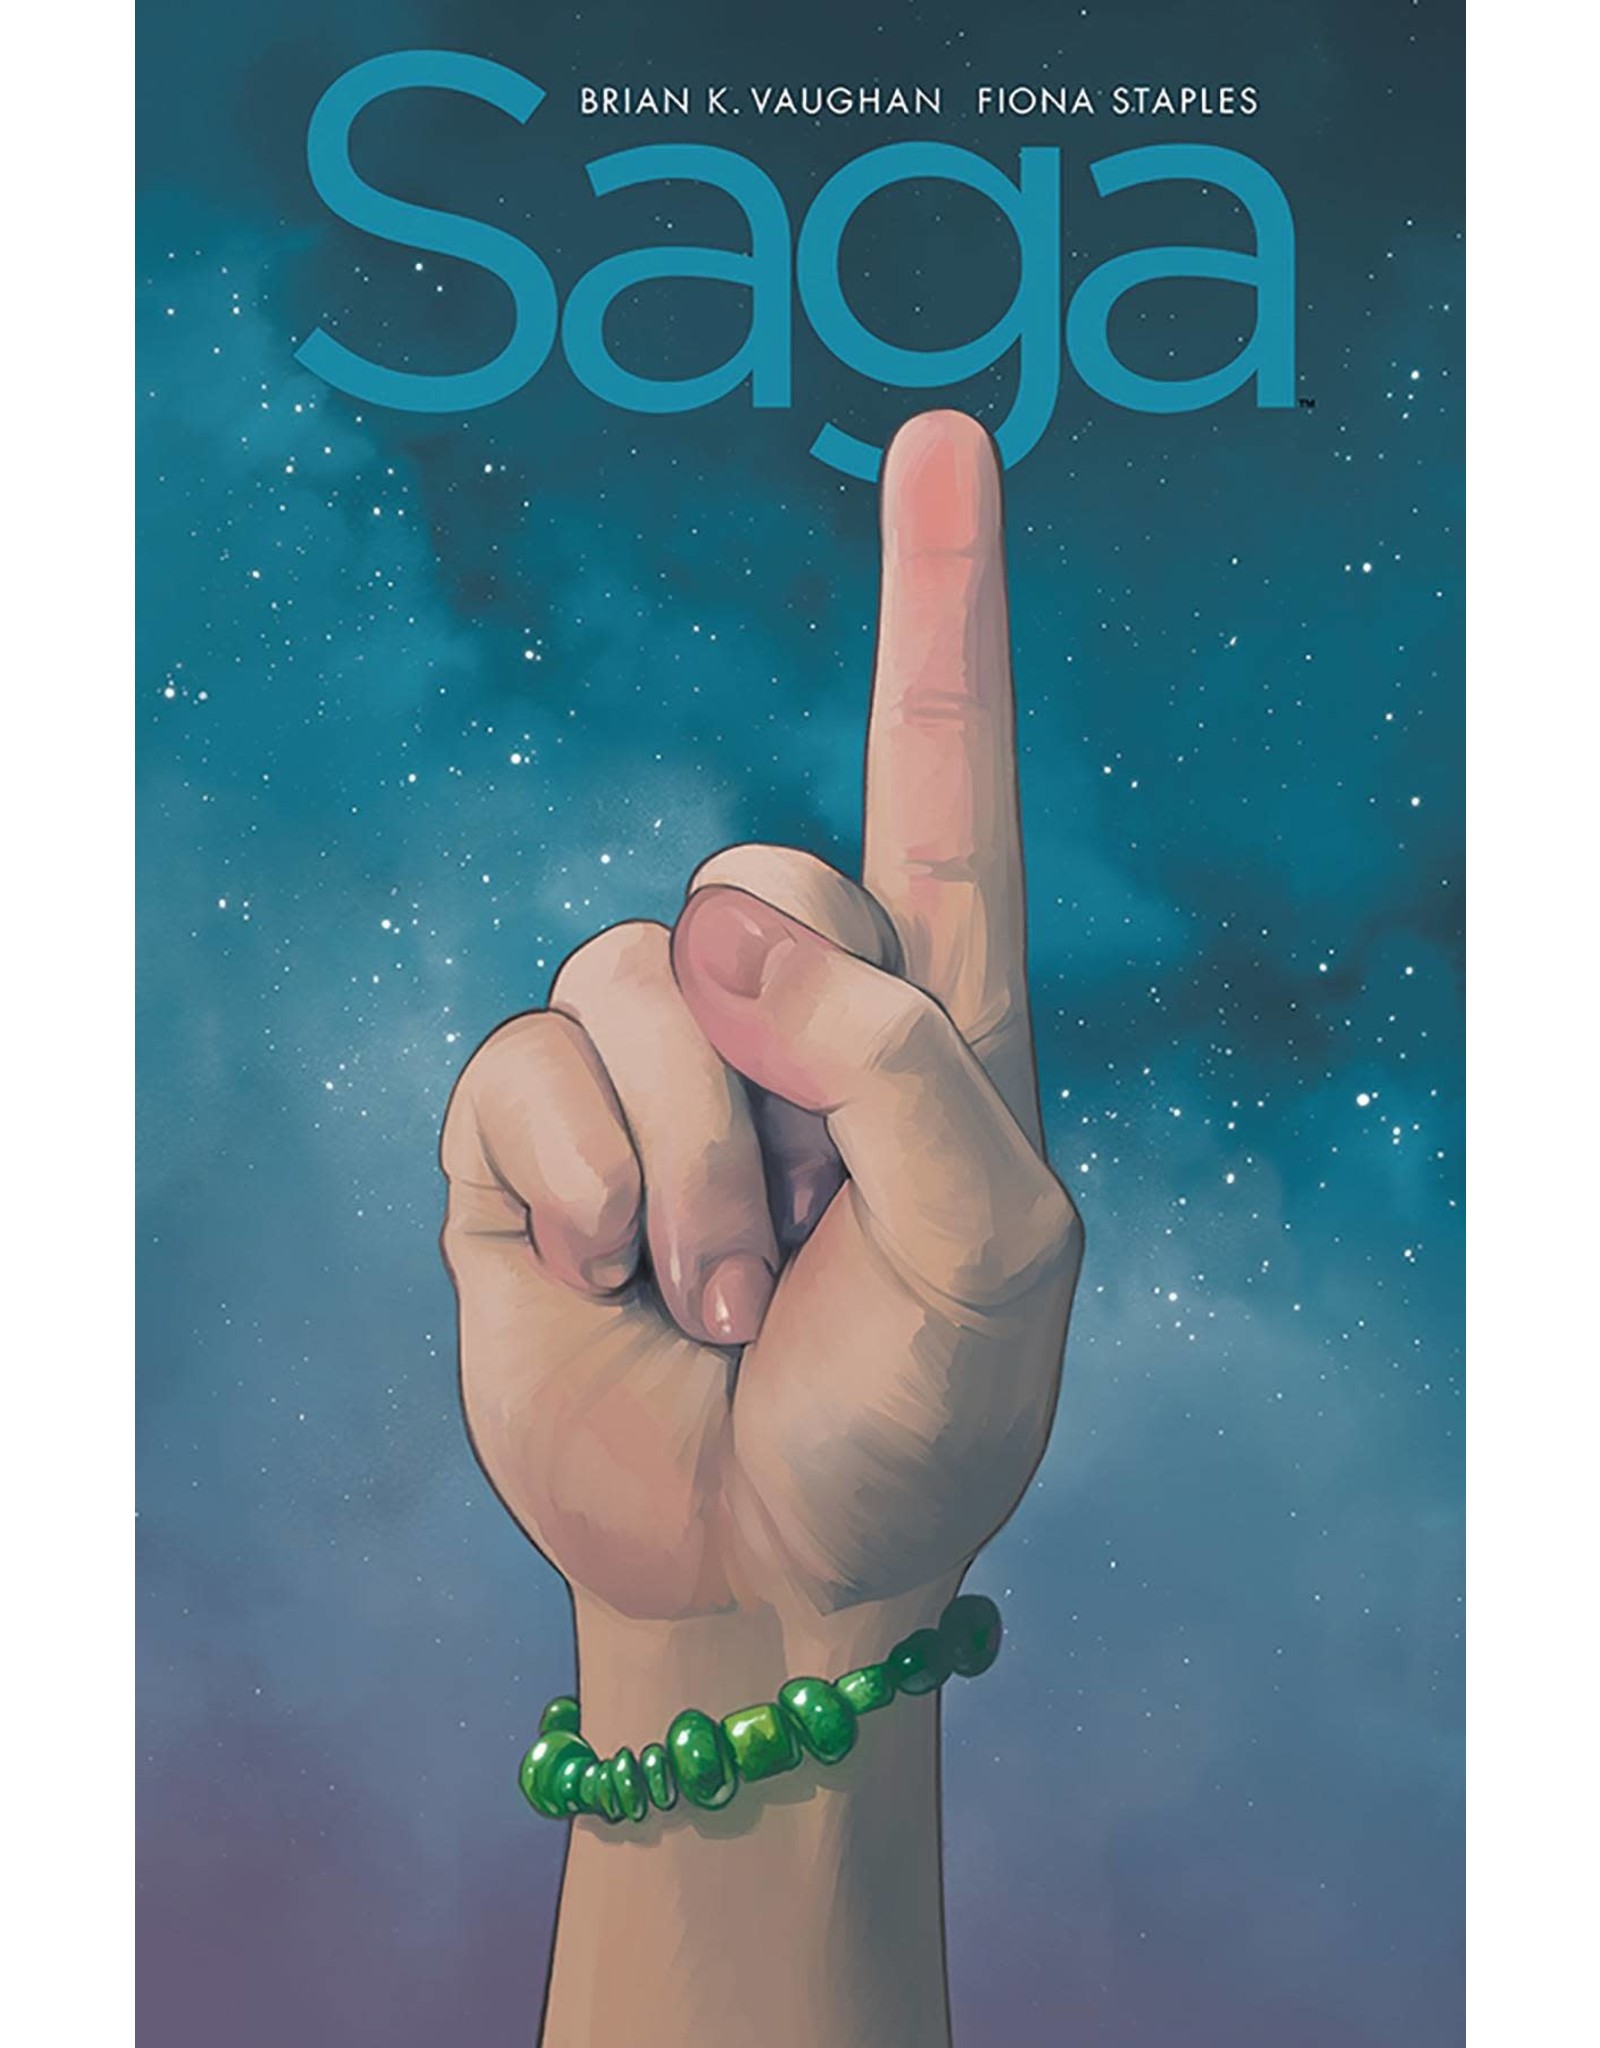 saga compendium 1 hardcover